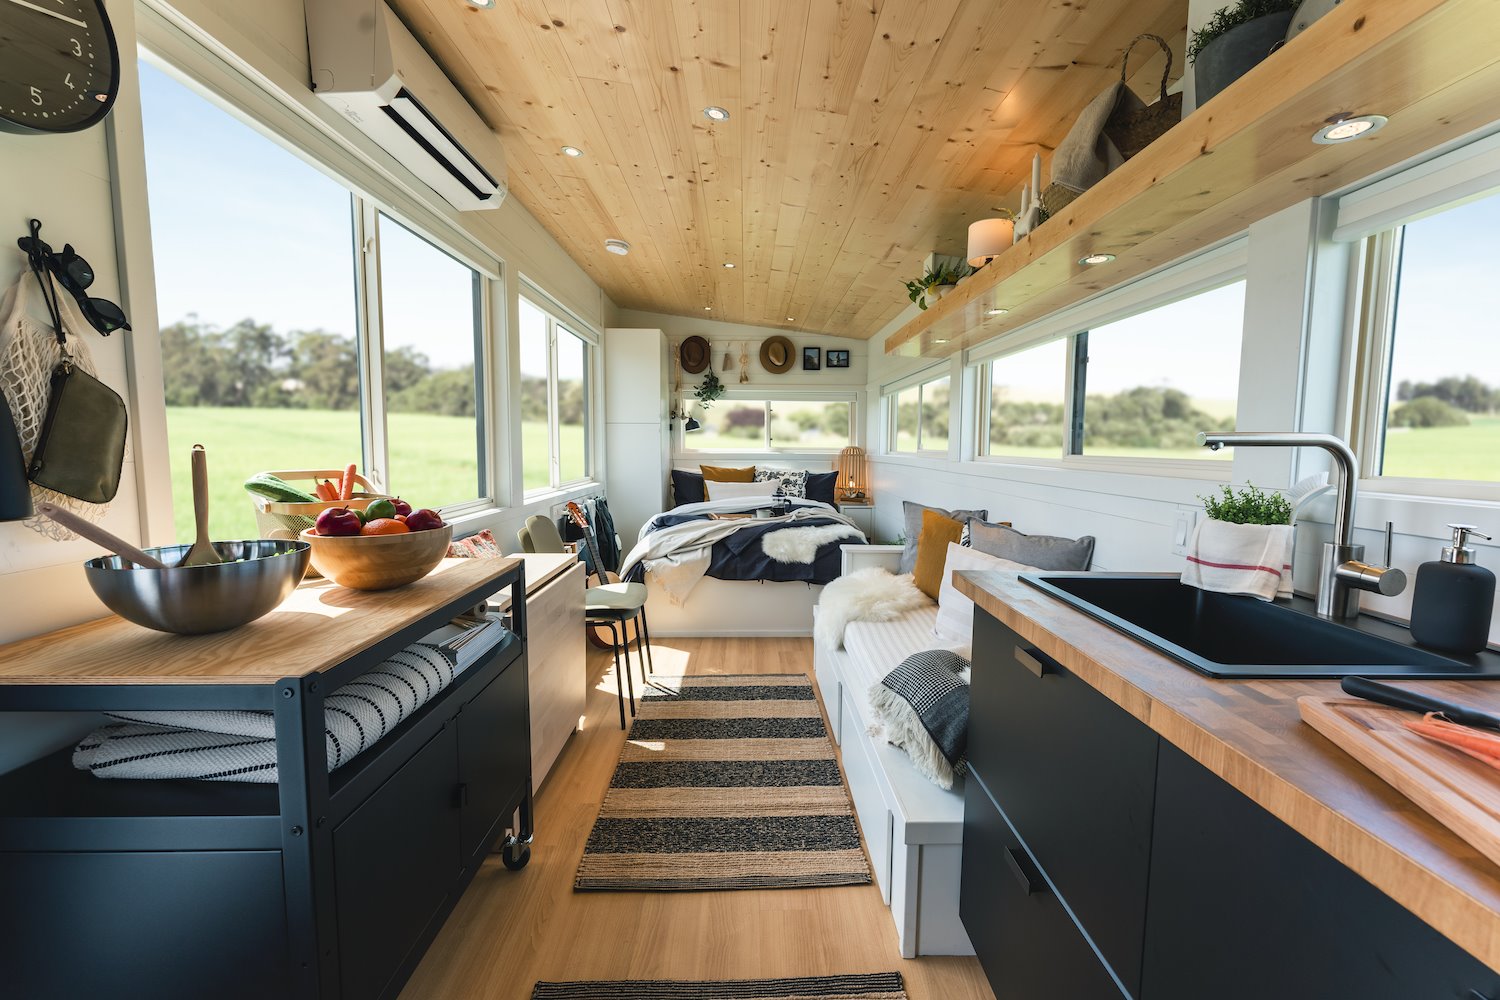 Casa mini de Ikea vista del salon cocina y dormitorio con techos de madera